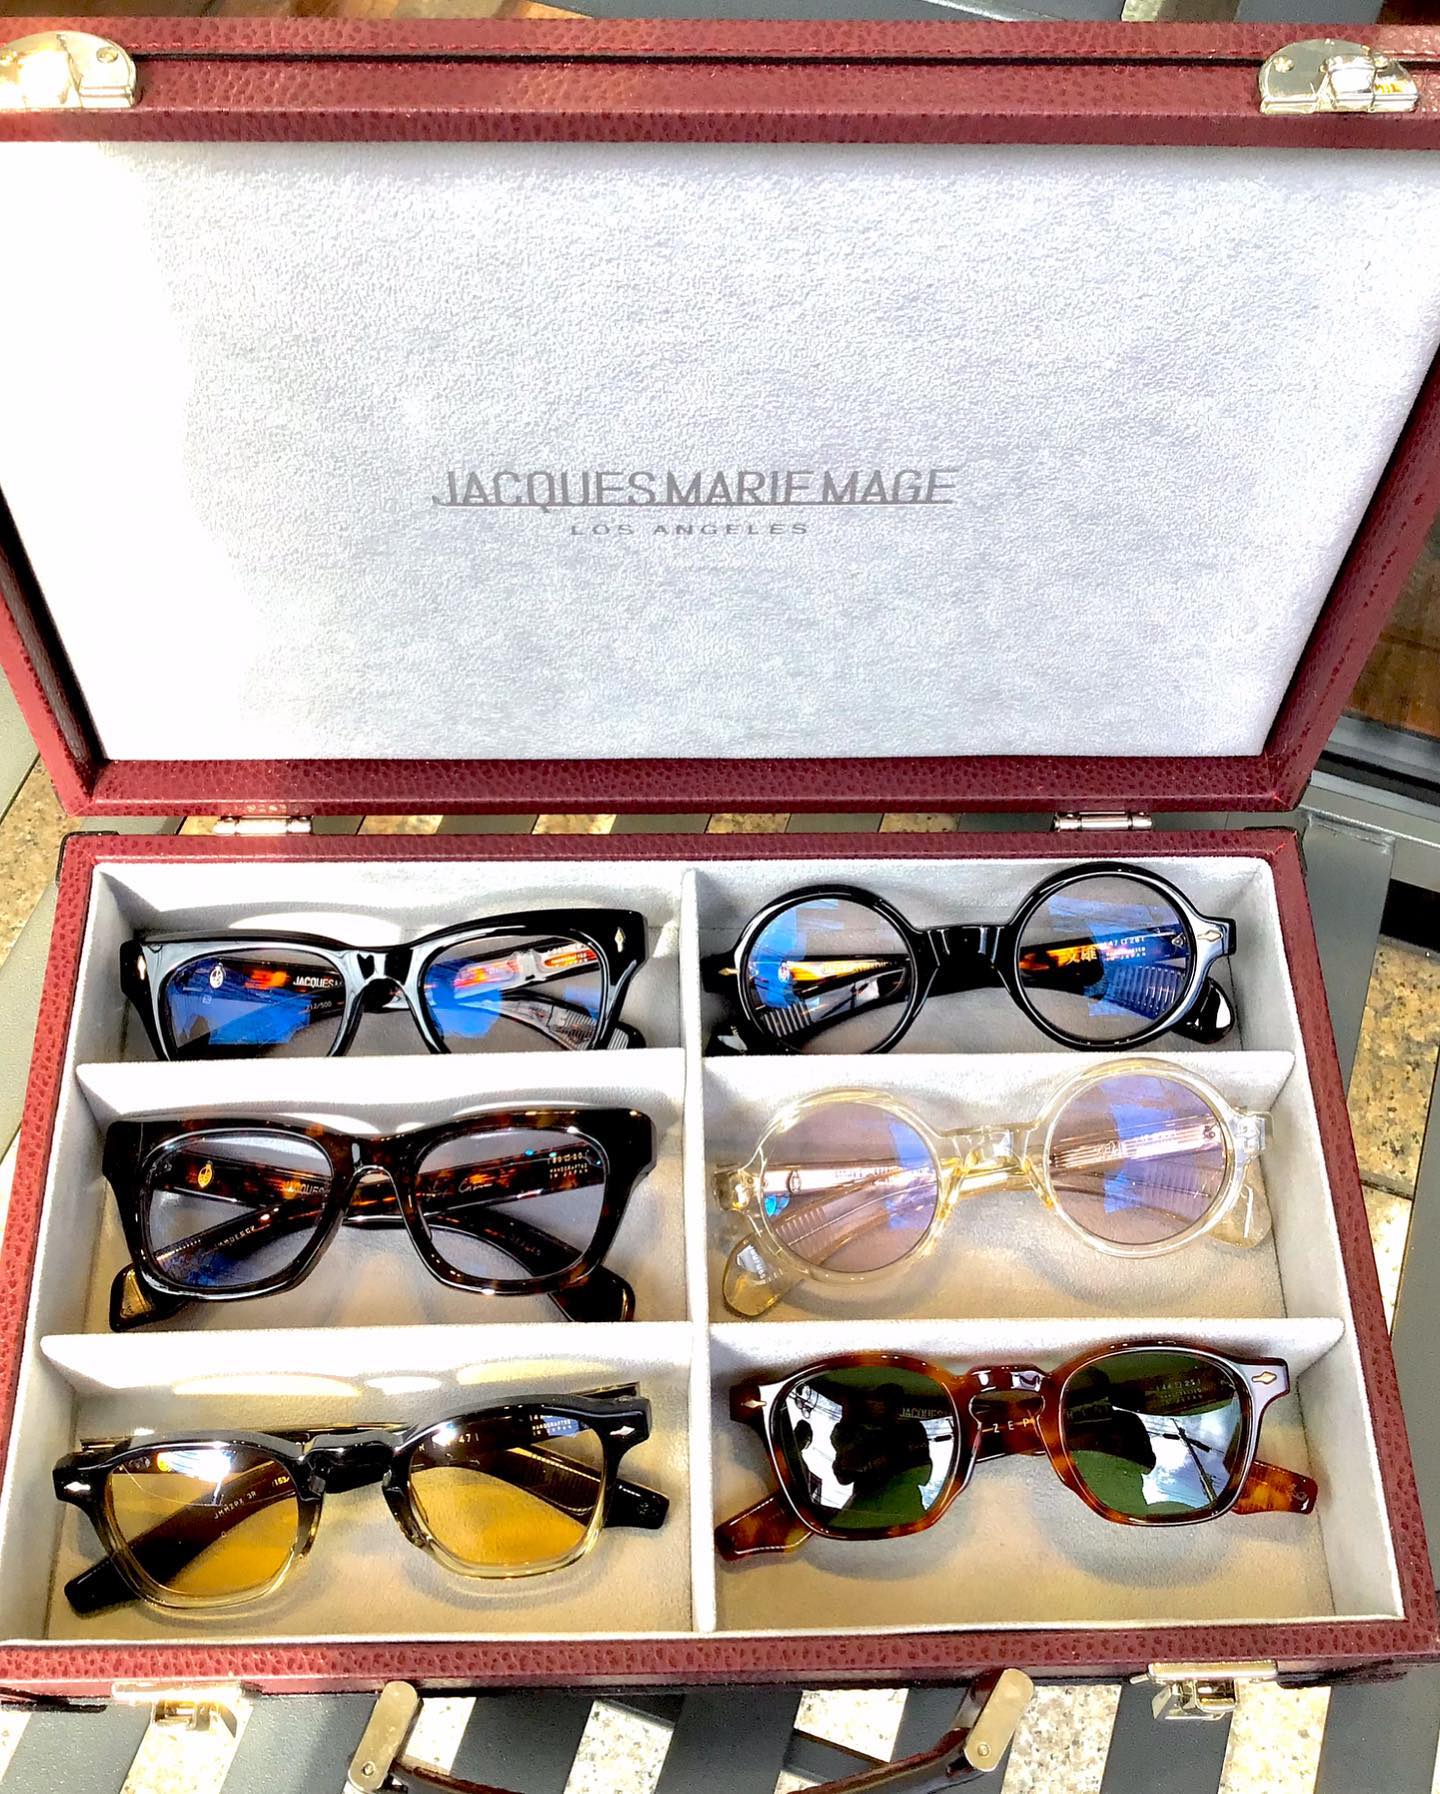 インスタご覧の皆様こんばんは！
本日は当店のお客様のジャックマリーマージュのコレクションを撮影させて頂きました。

いつも当店をご利用いただいておりますK様のジャックマリーマージュのコレクションを一部撮影させて頂きました。

K様は多数の眼鏡をお持ちですが、現在ジャックマリーマージュの眼鏡をコレクションされており、今回はジャックマリーマージュのアタッシュケースに入れご持参いただき撮影させていただきましたありがとうございます。

ジャックマリーマージュのモデルごとに2色のカラーをアタッシュケースに入れてあり、K様の大切にされているジャックマリーマージュの世界感が感じられますねとご来店時にK様と楽しくお話しをさせていただきました。

またお近くに来られた際には眼鏡のメンテナンスにもお立ち寄り下さい。

︎shop data︎

最寄り駅 自由が丘
正面口出口から歩いて約５分です。
住所 152-0035
東京都目黒区自由が丘1-16-13ヒルズ自由が丘1F
︎03-5731-6612
OPEN11:00〜20:00
info＠beauxyeux.jp



#自由が丘 
#ボズュー自由が丘



@beauxyeux_azabu